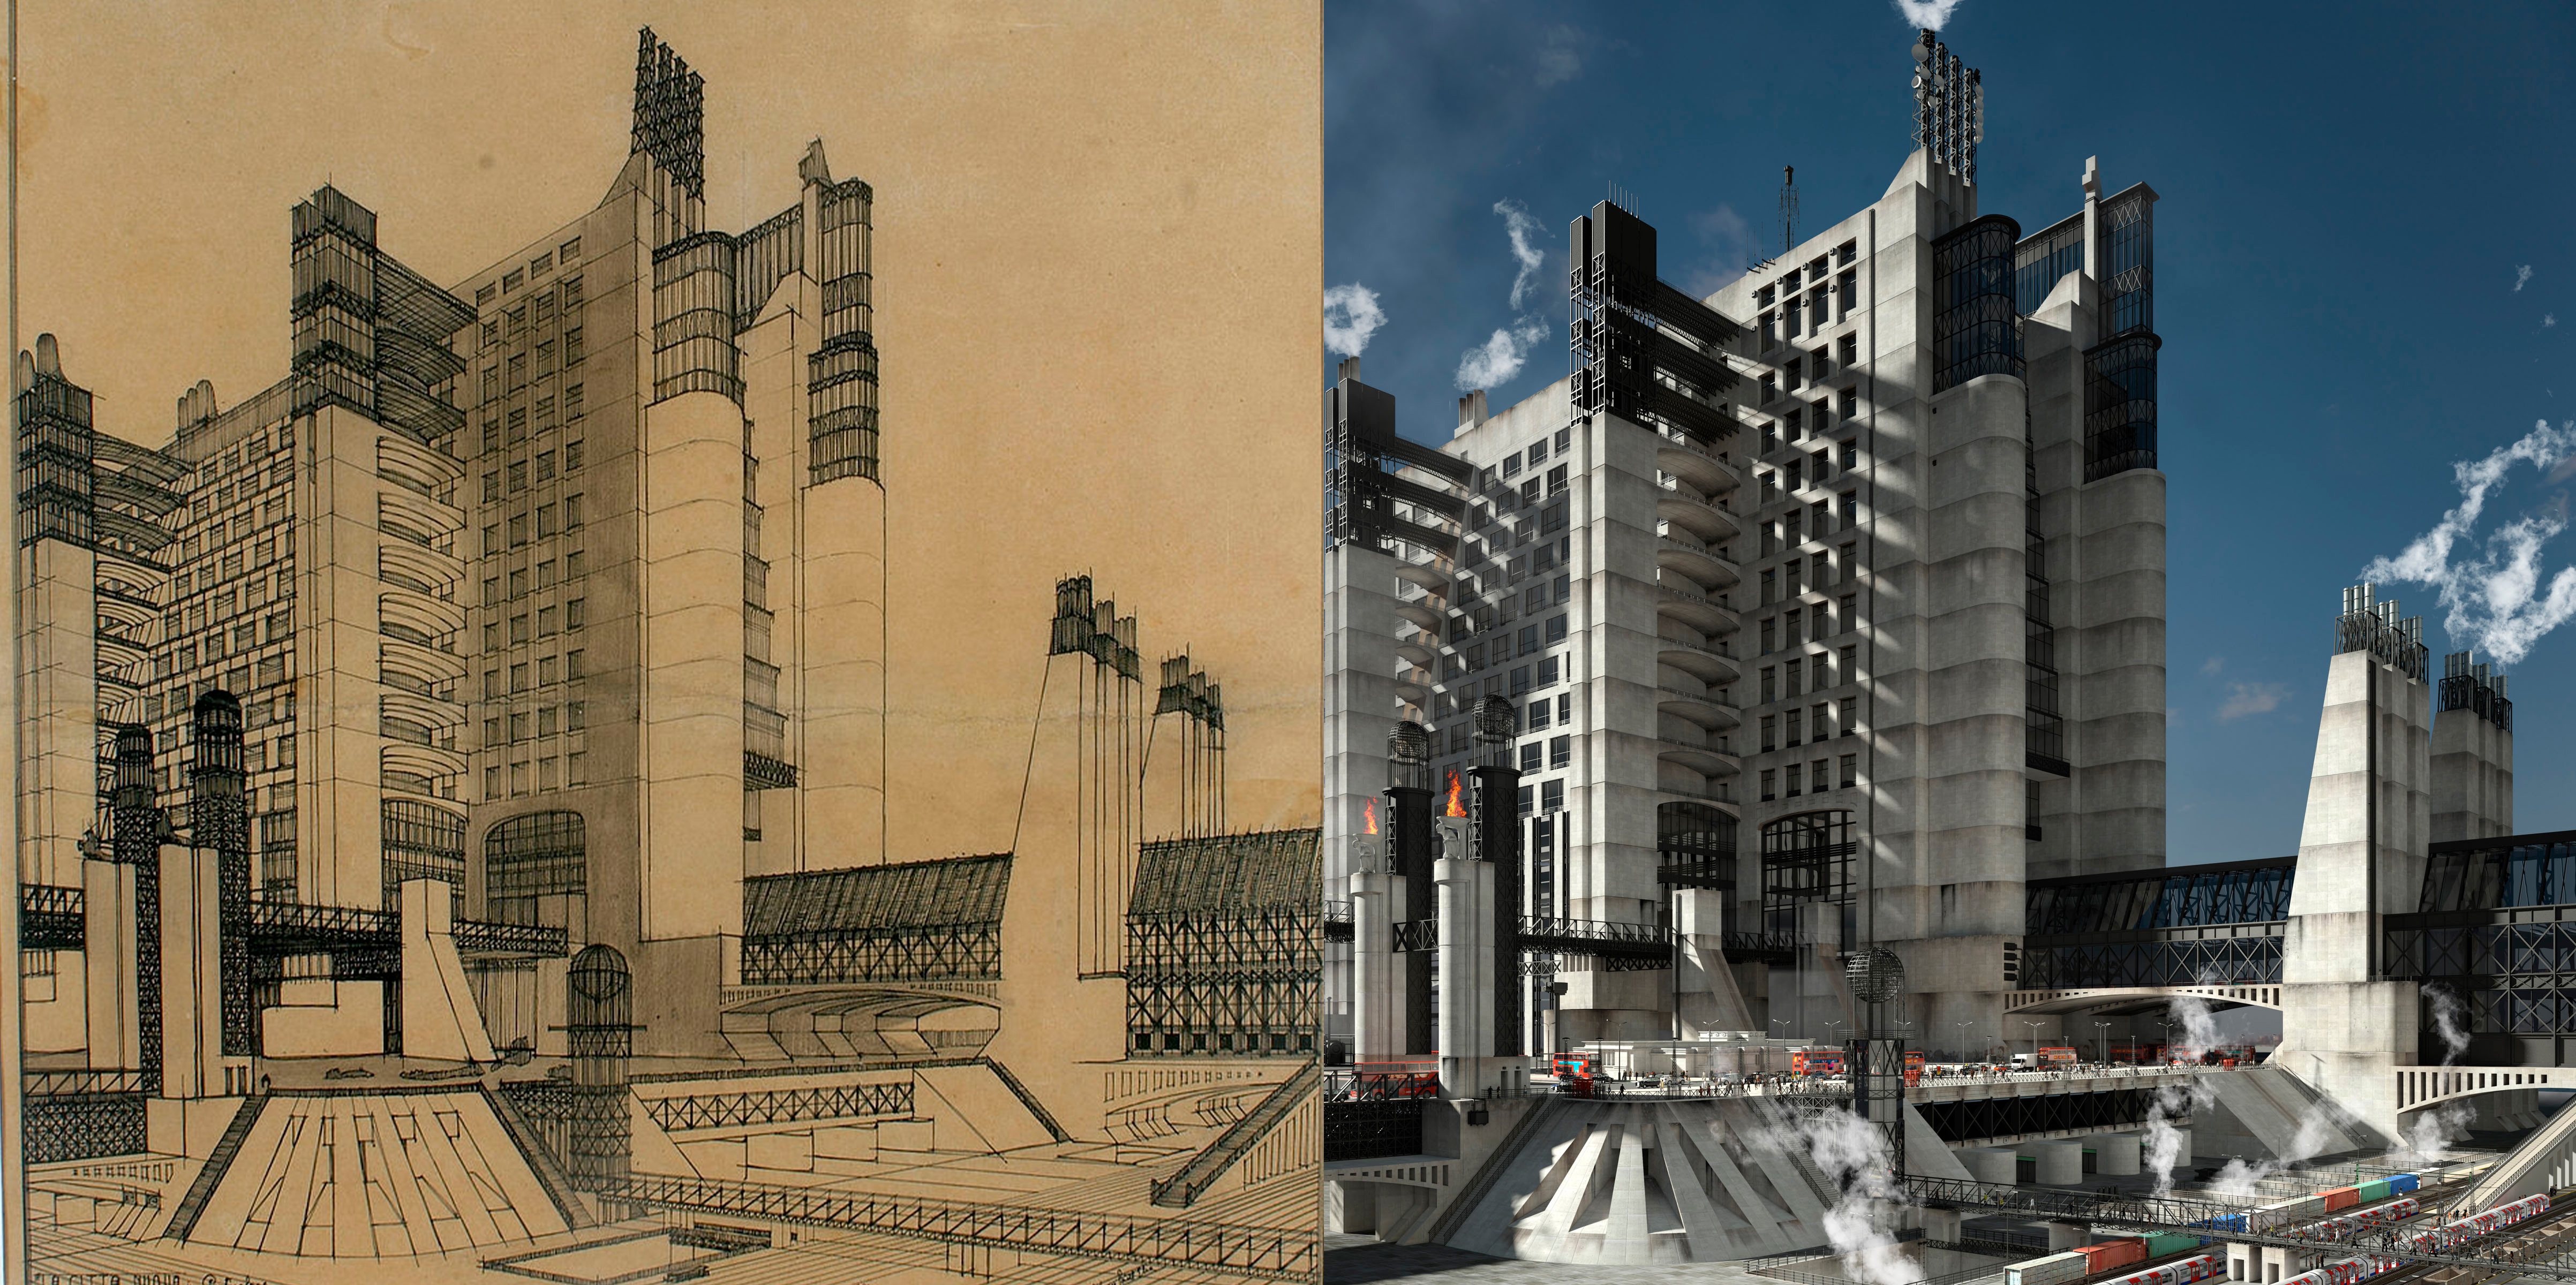 建築設計師Antonio Sant'Elia, 在1914設計的未來主義建築，右圖為網絡圖片，根據設計稿建模渲染。